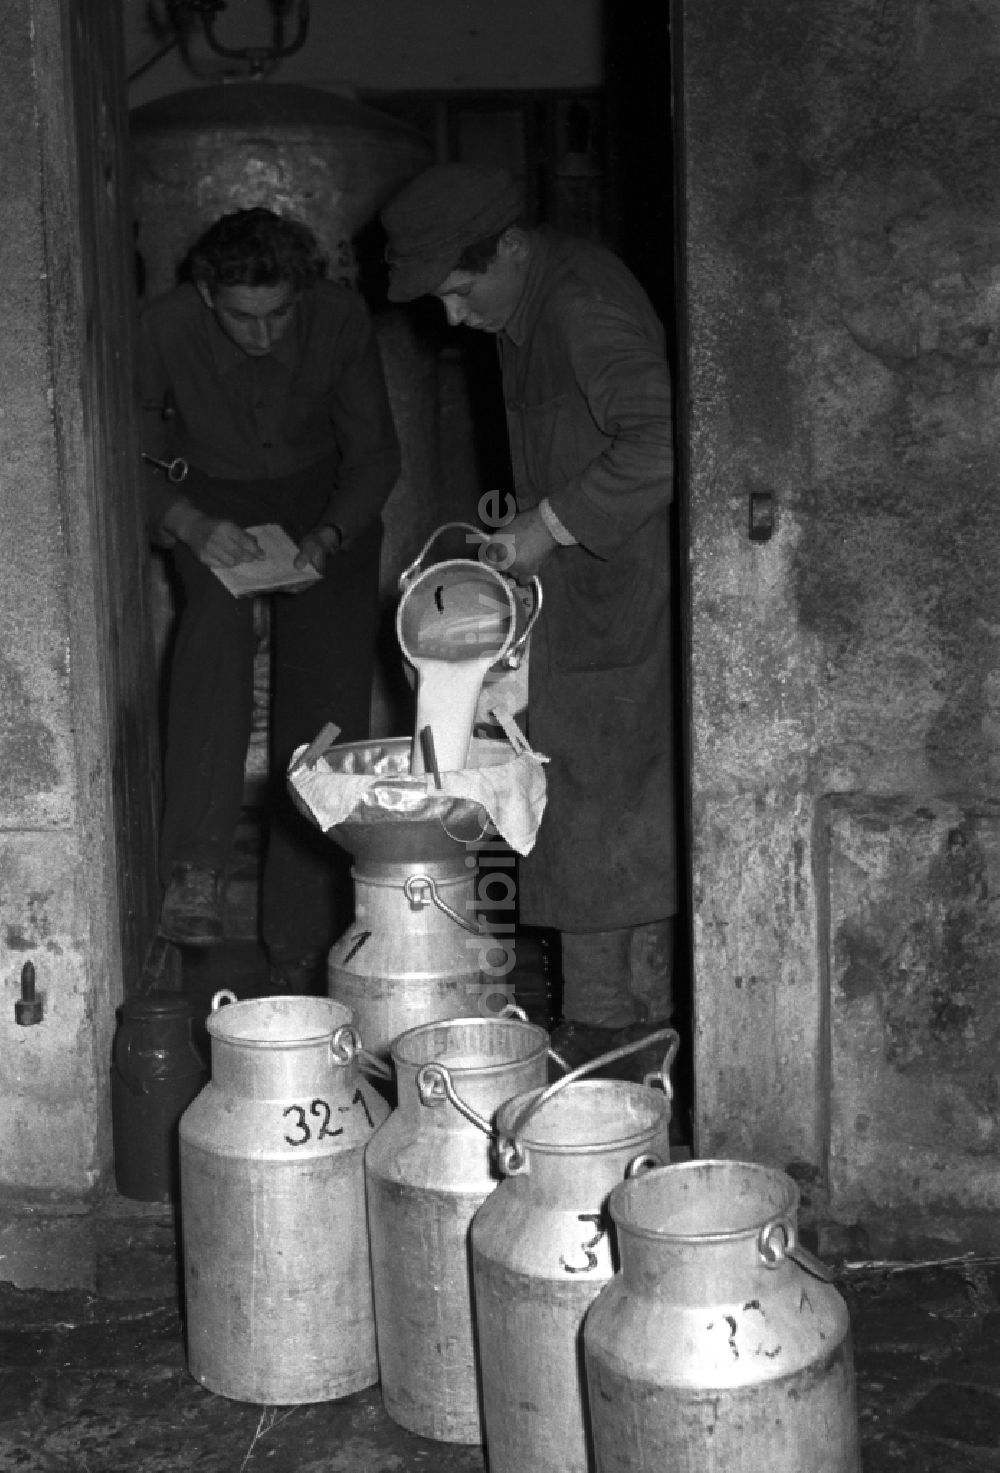 DDR-Fotoarchiv: Reichstädt - Arbeiten zur Milchproduktion in einem Landwirtschaftsbetrieb in Reichstädt in Thüringen in der DDR